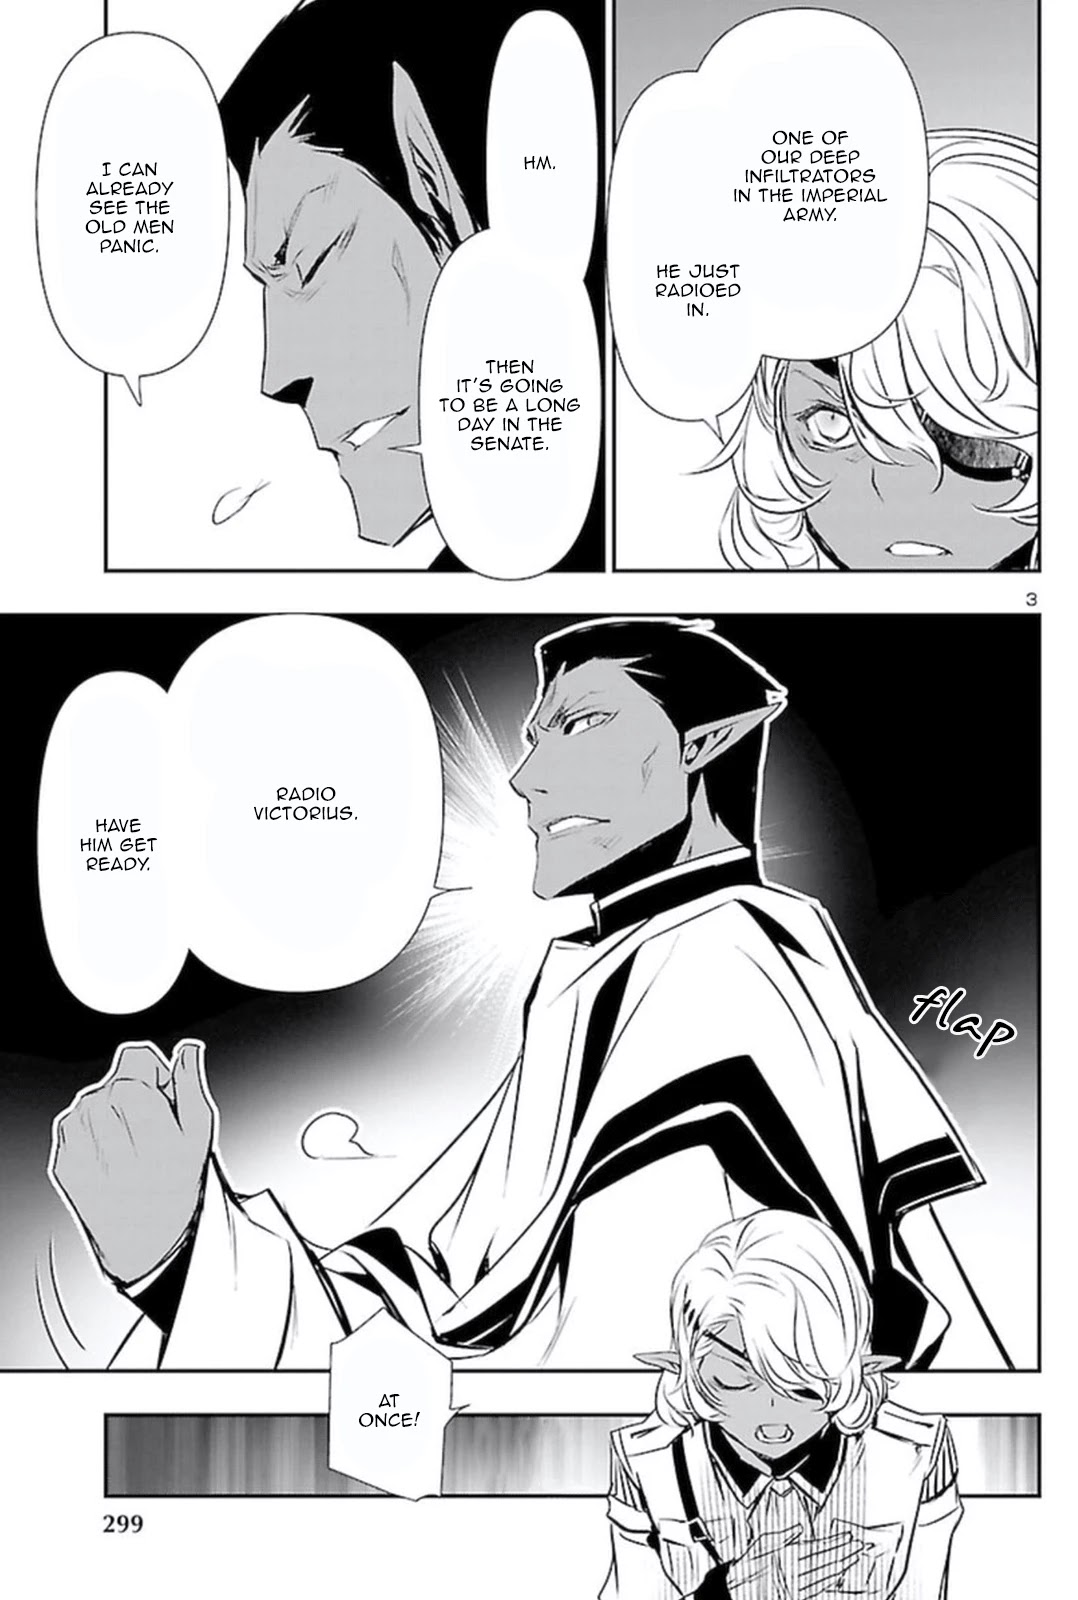 Shinju No Nectar - Page 2